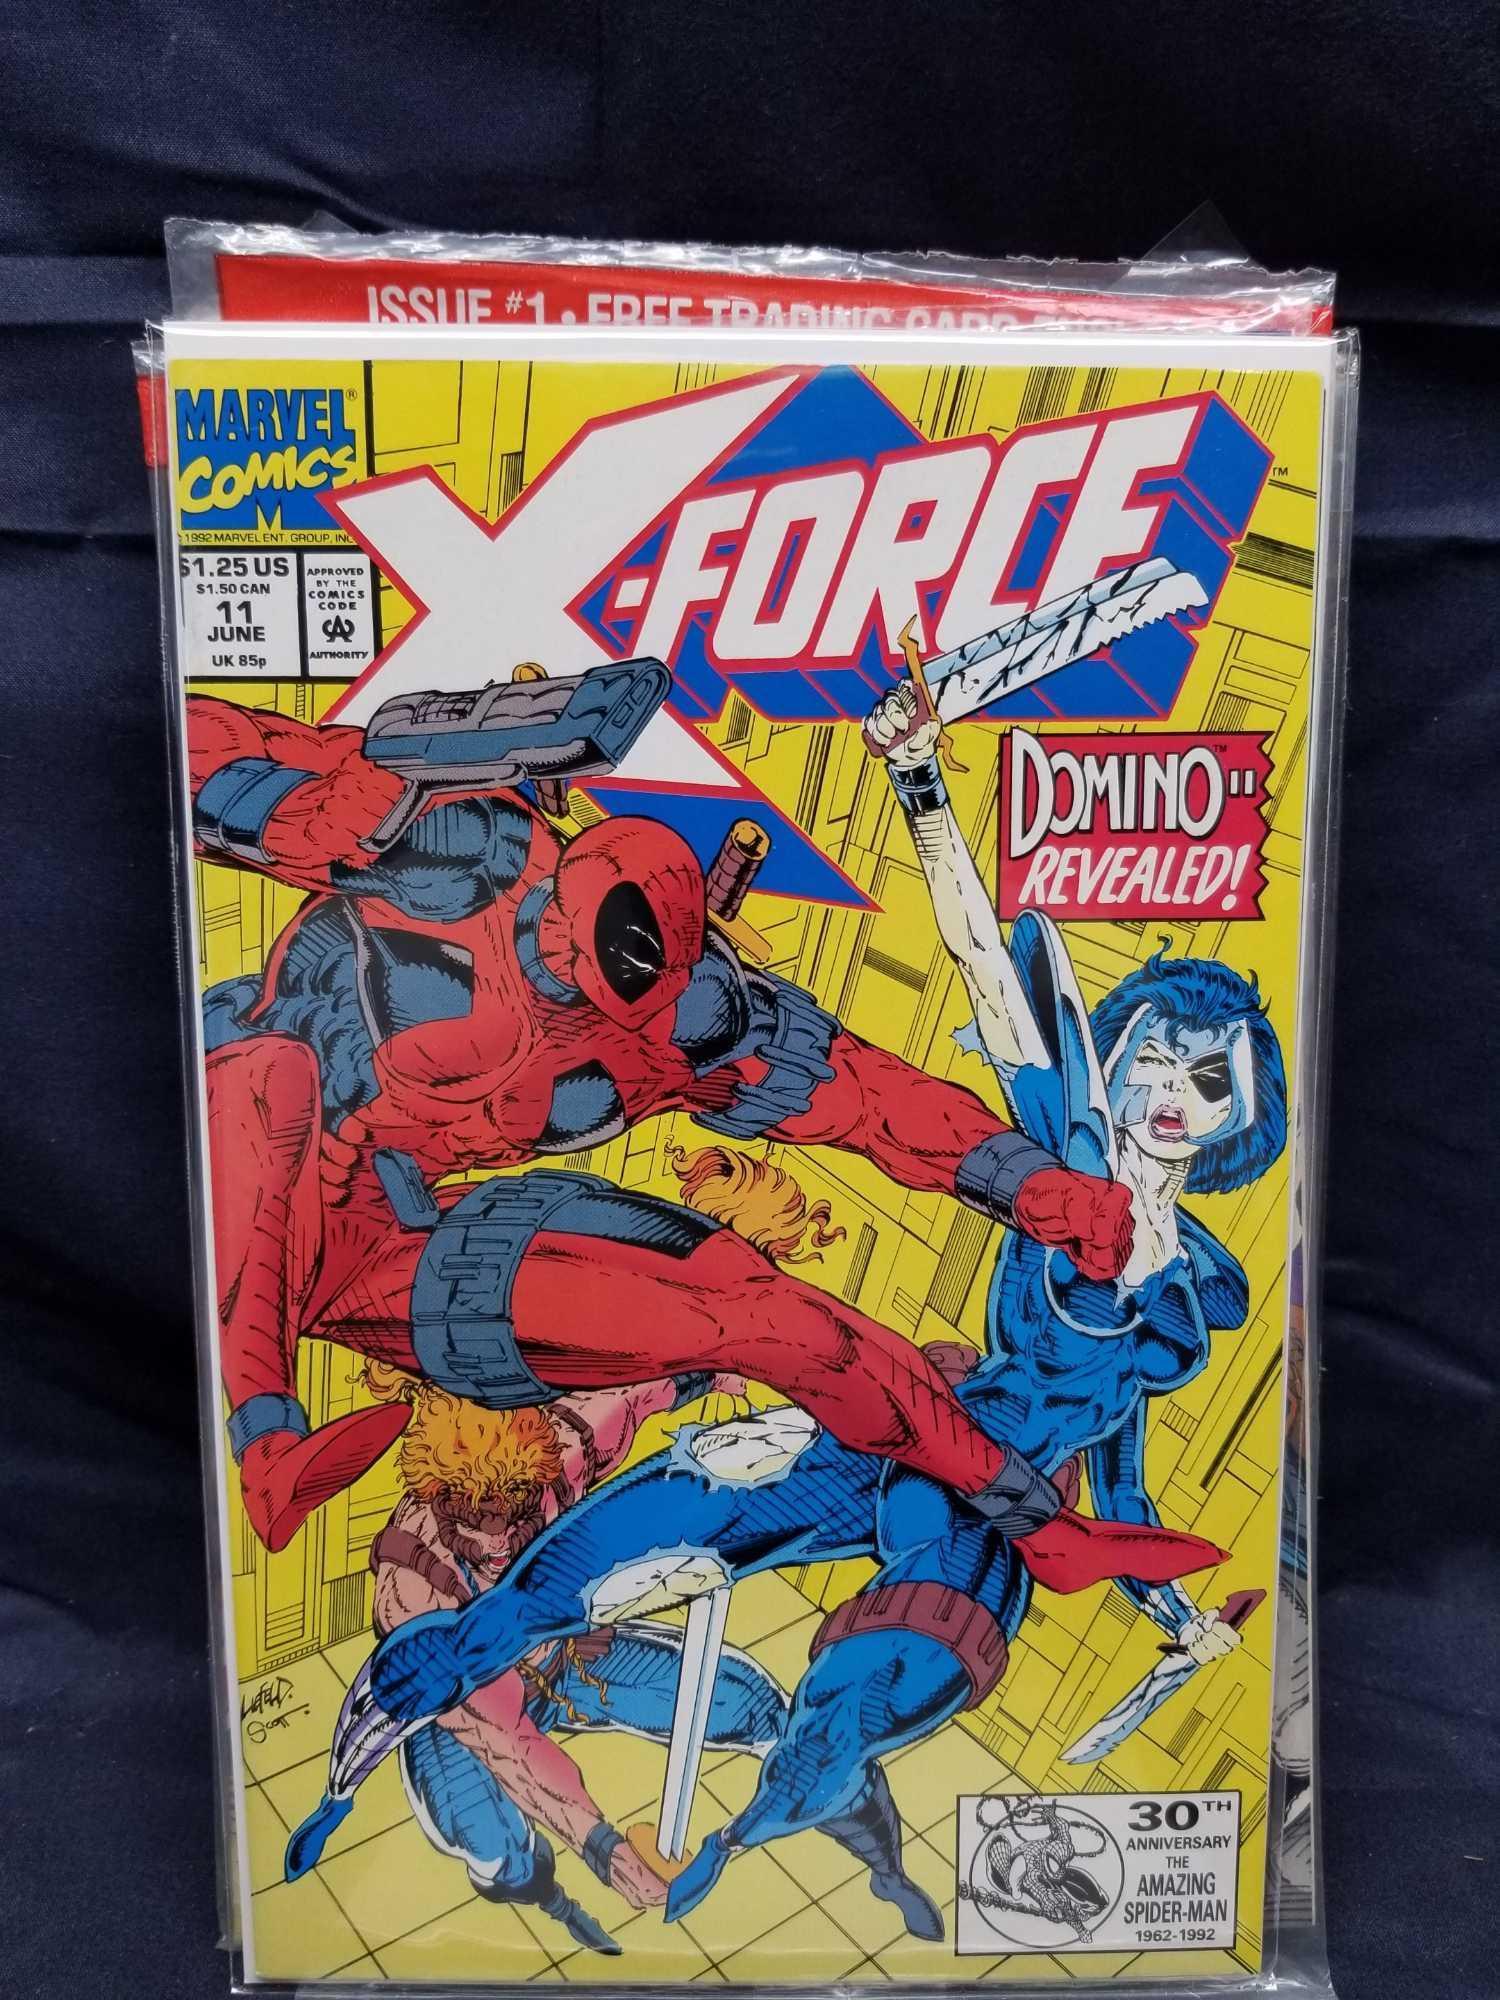 Vintage Marvel X-Men Comics 13 Units